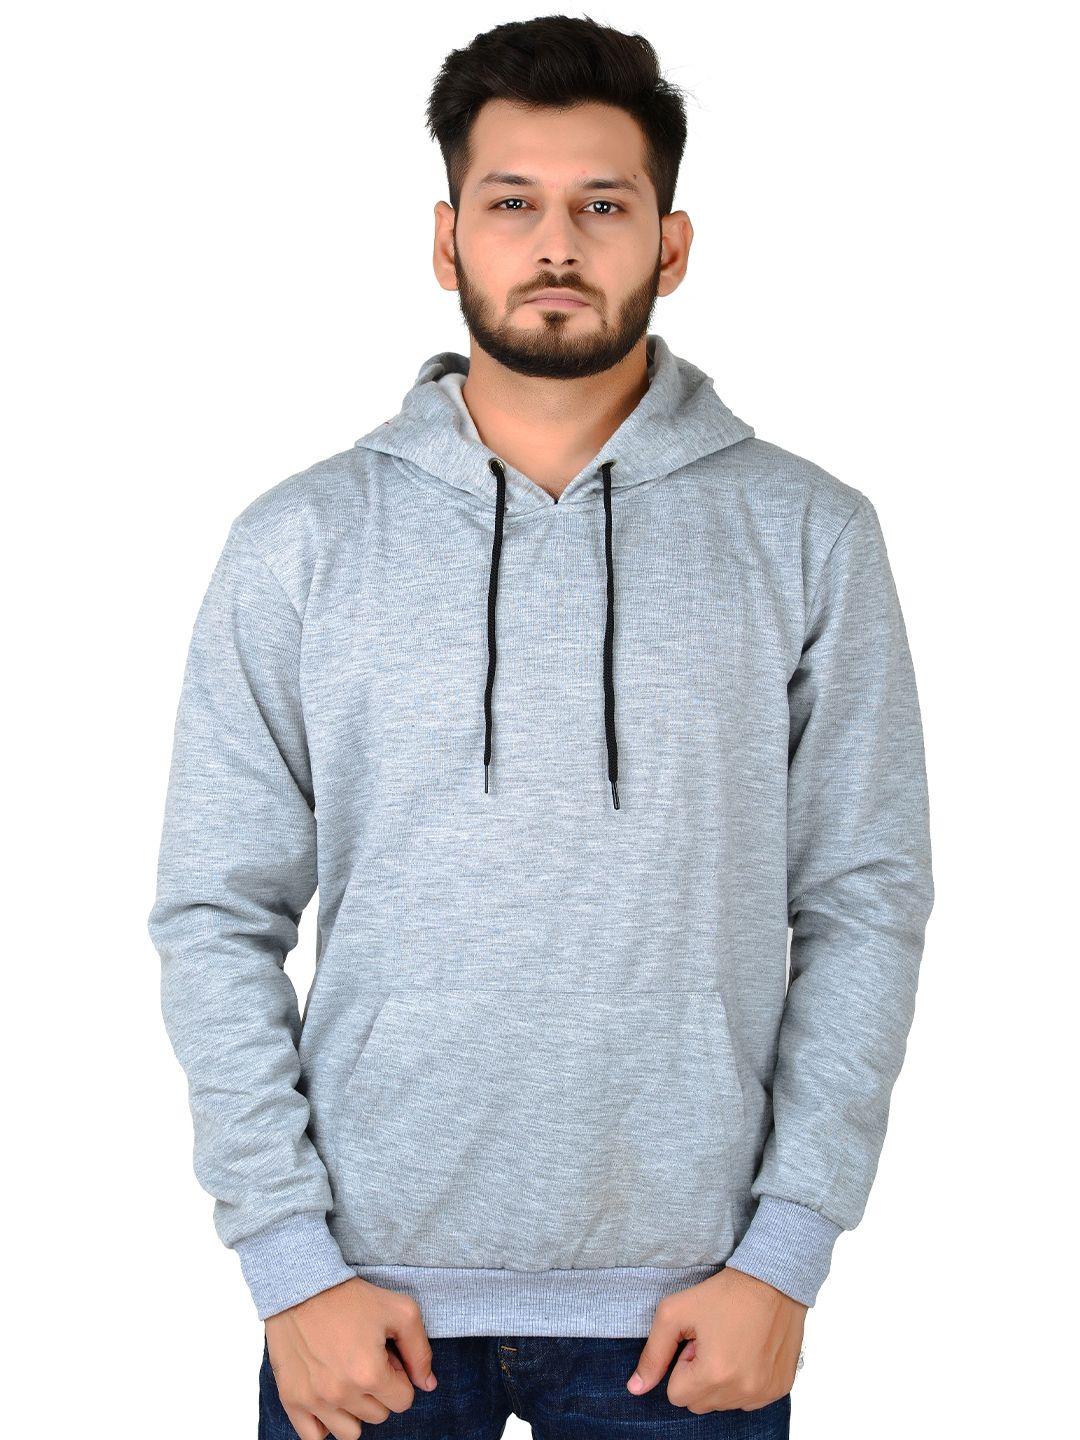 divra clothing unisex hooded long sleeves sweatshirt